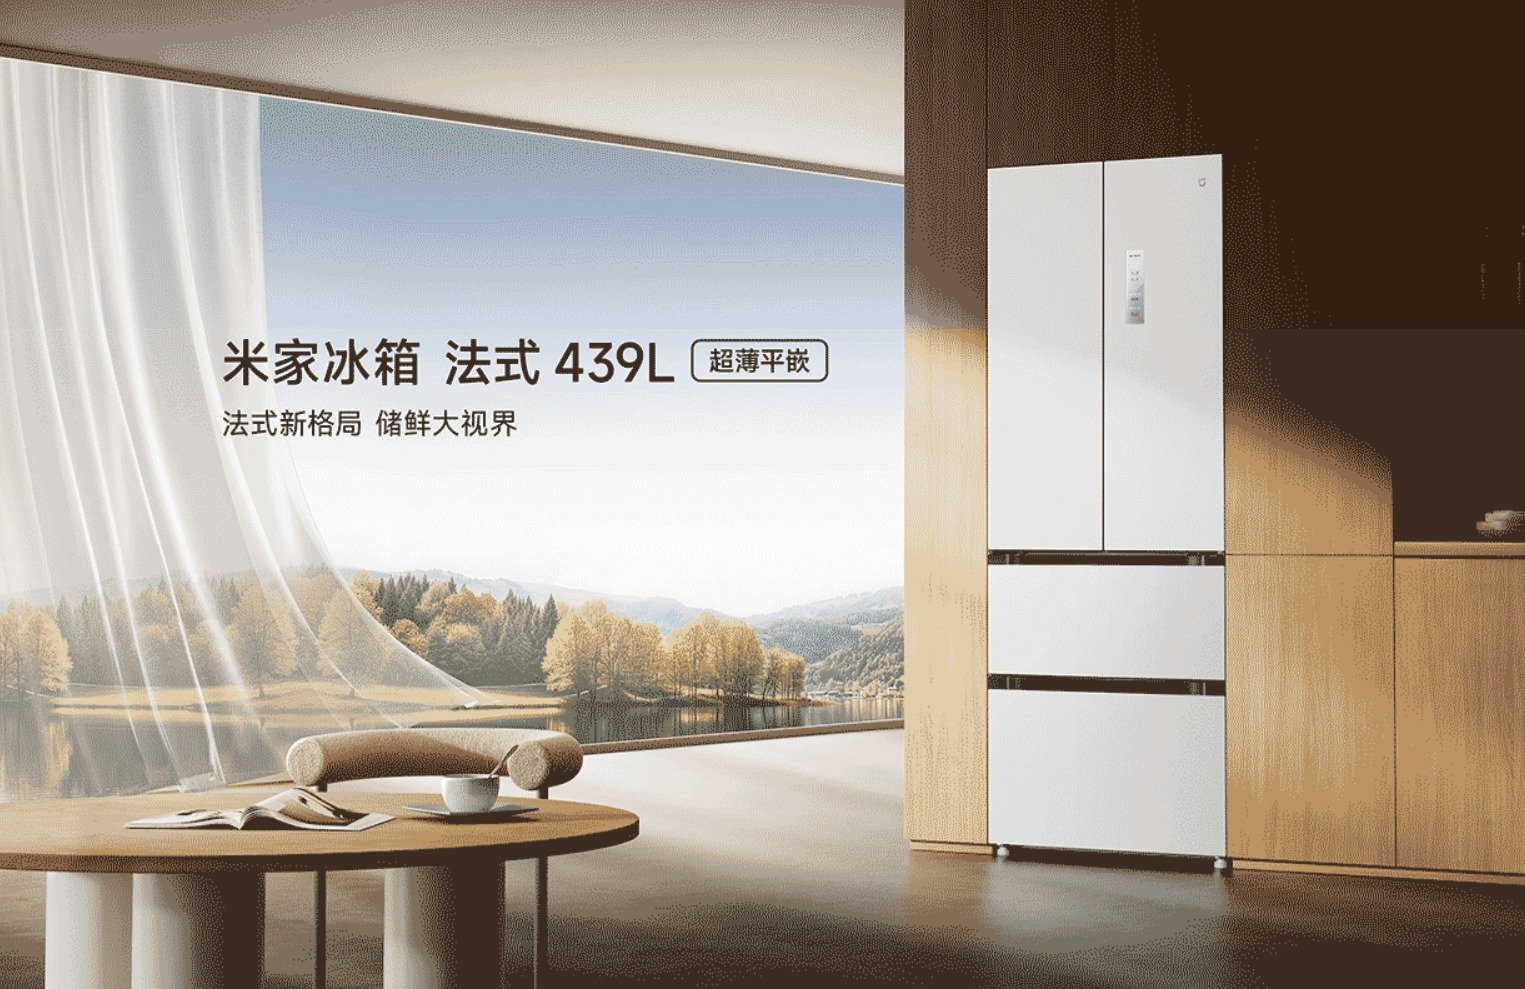 Xiaomi Mijia kylskåp 439L i fransk stil släppt i Kina